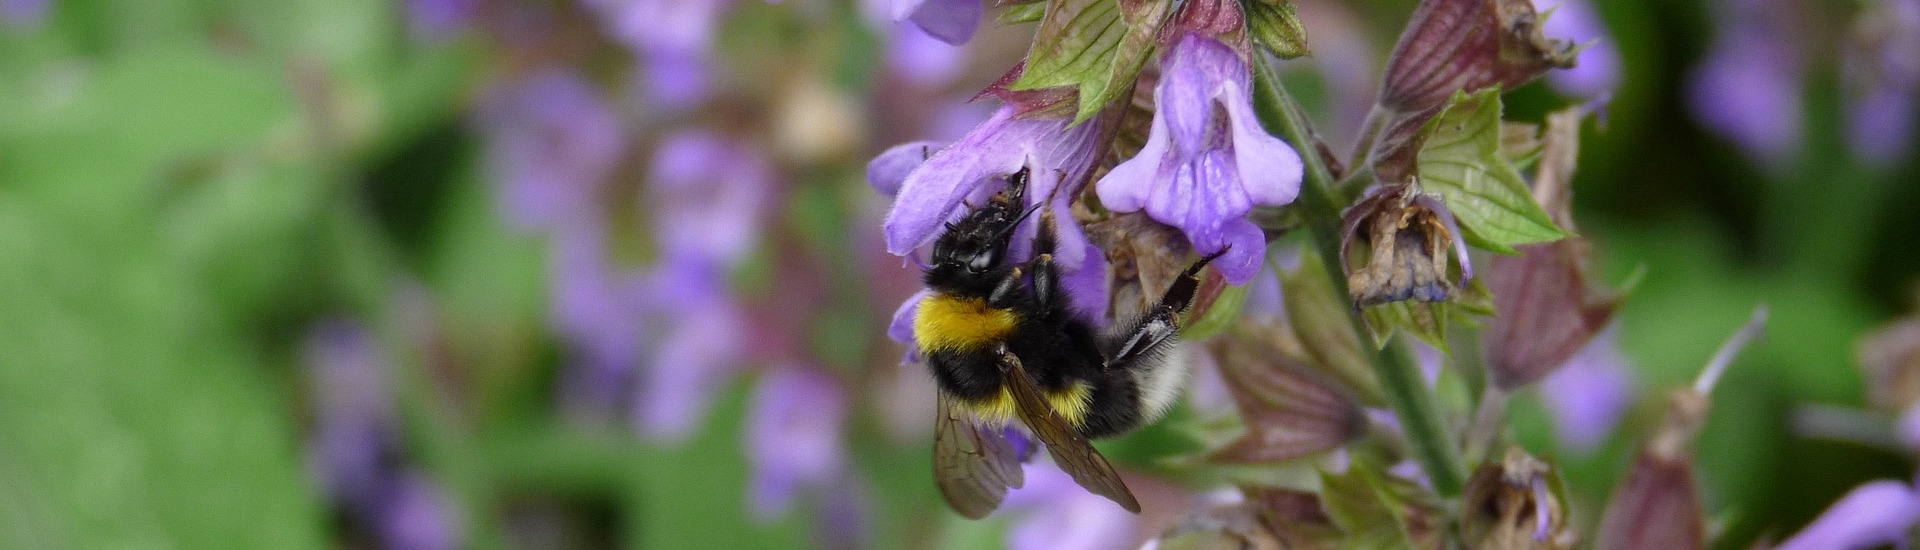 Biene auf einer lila Blüte 